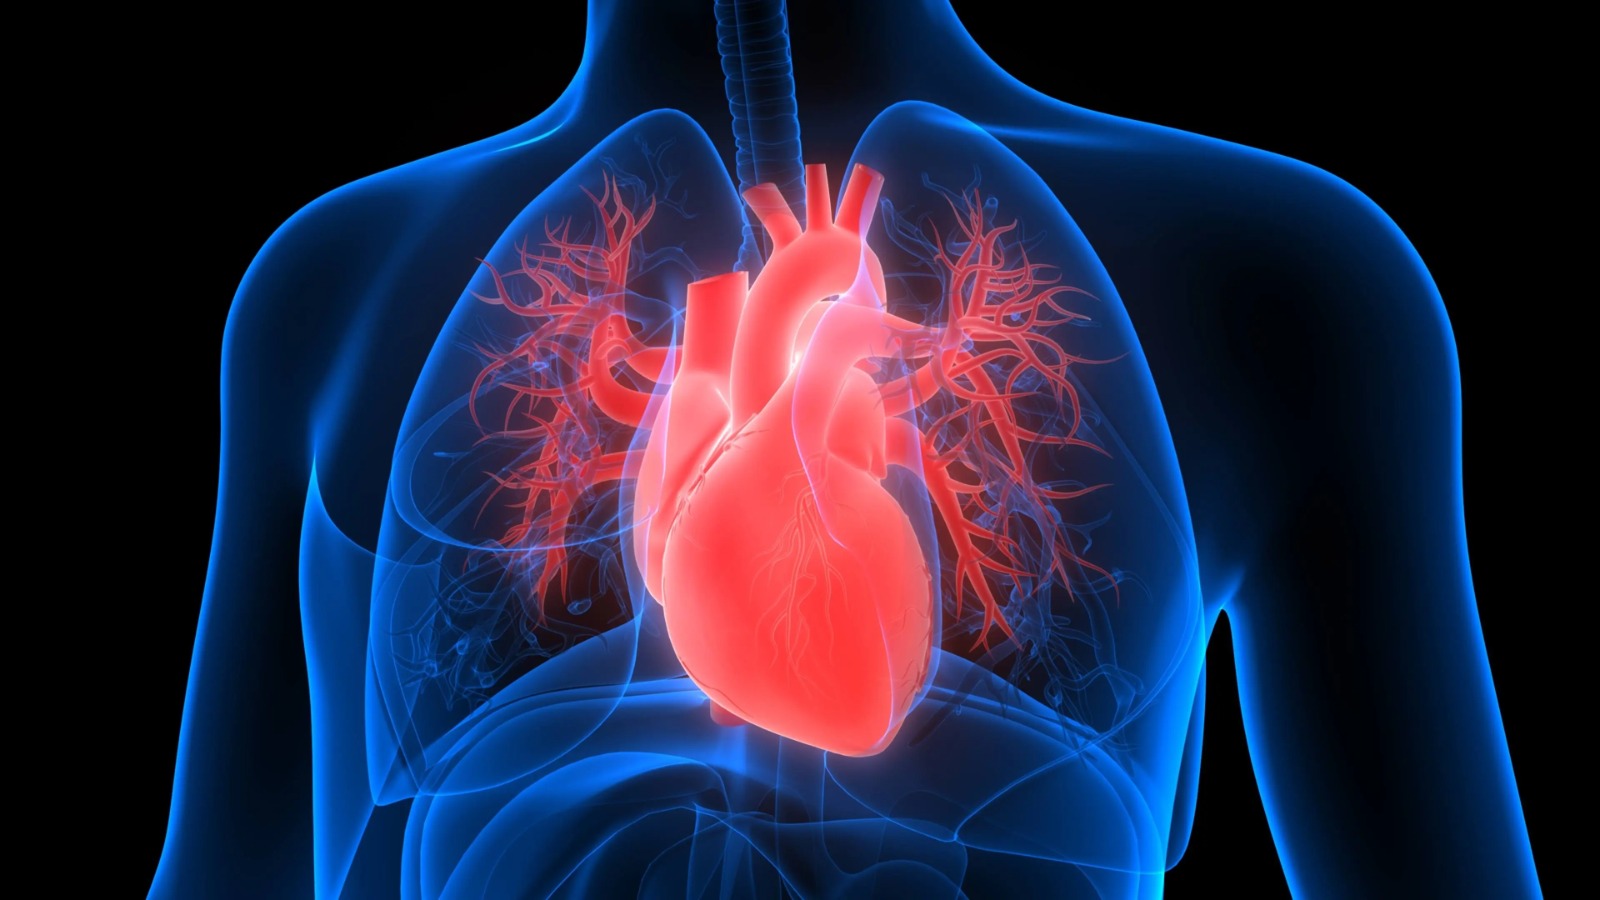 Cinco tipos de insuficiência cardíaca são identificados usando ferramentas de IA